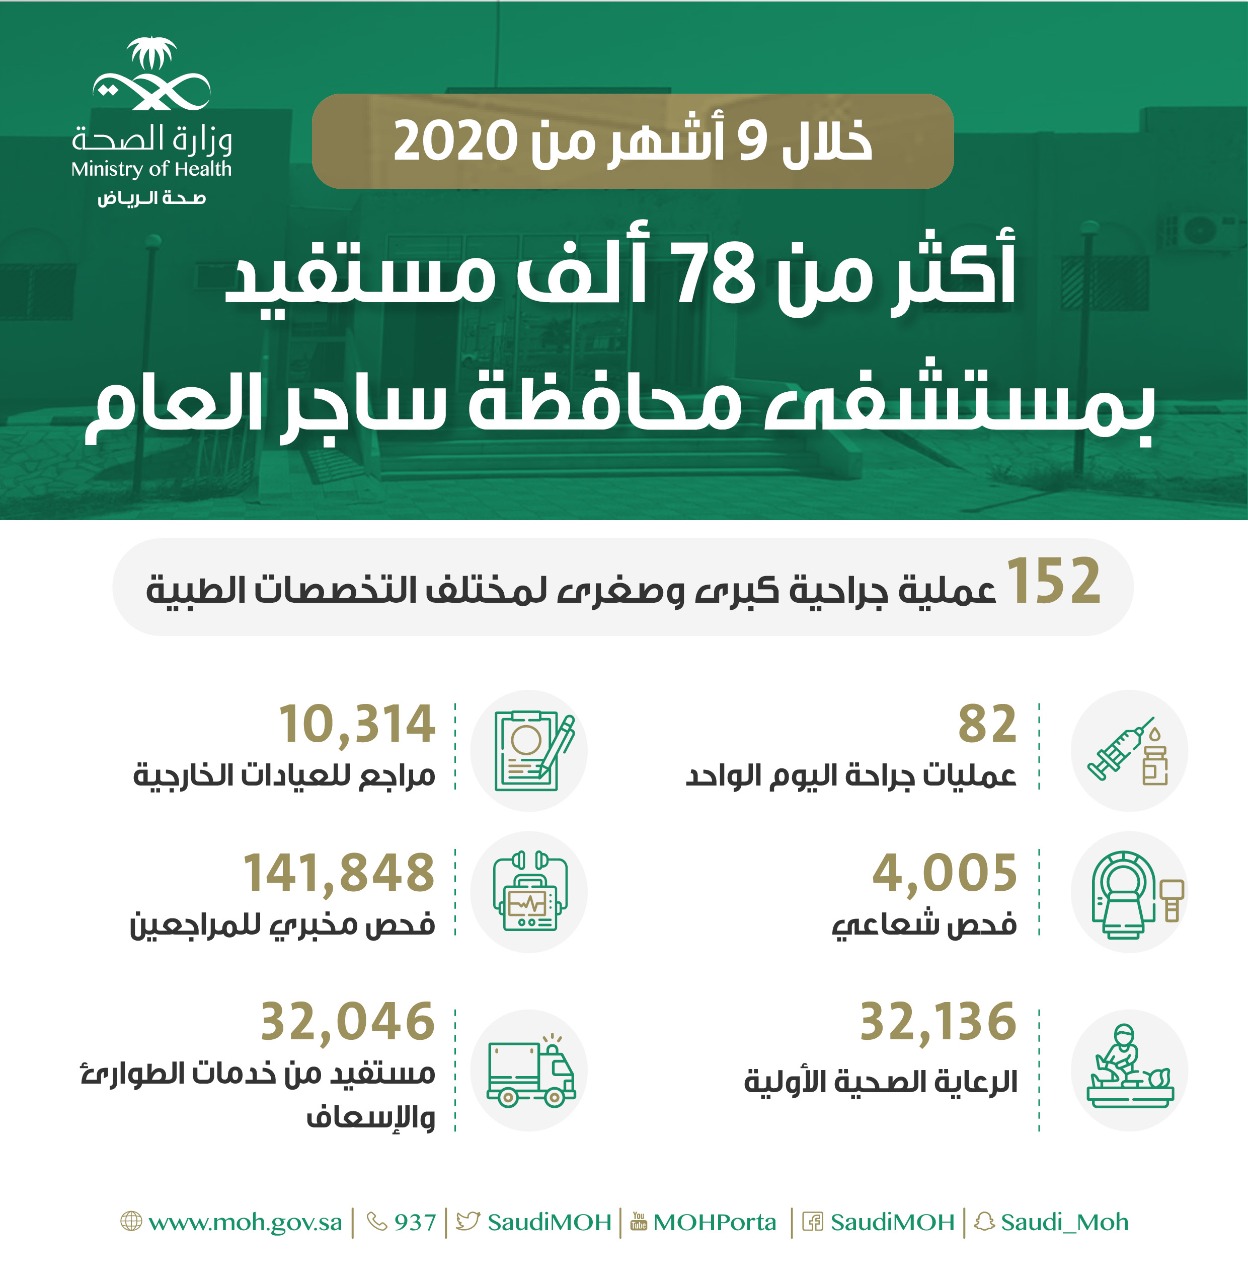 أكثر من 350 ألف مستفيد من خدمات الرعاية المزمنة في التجمع الصحي الأول في الرياض